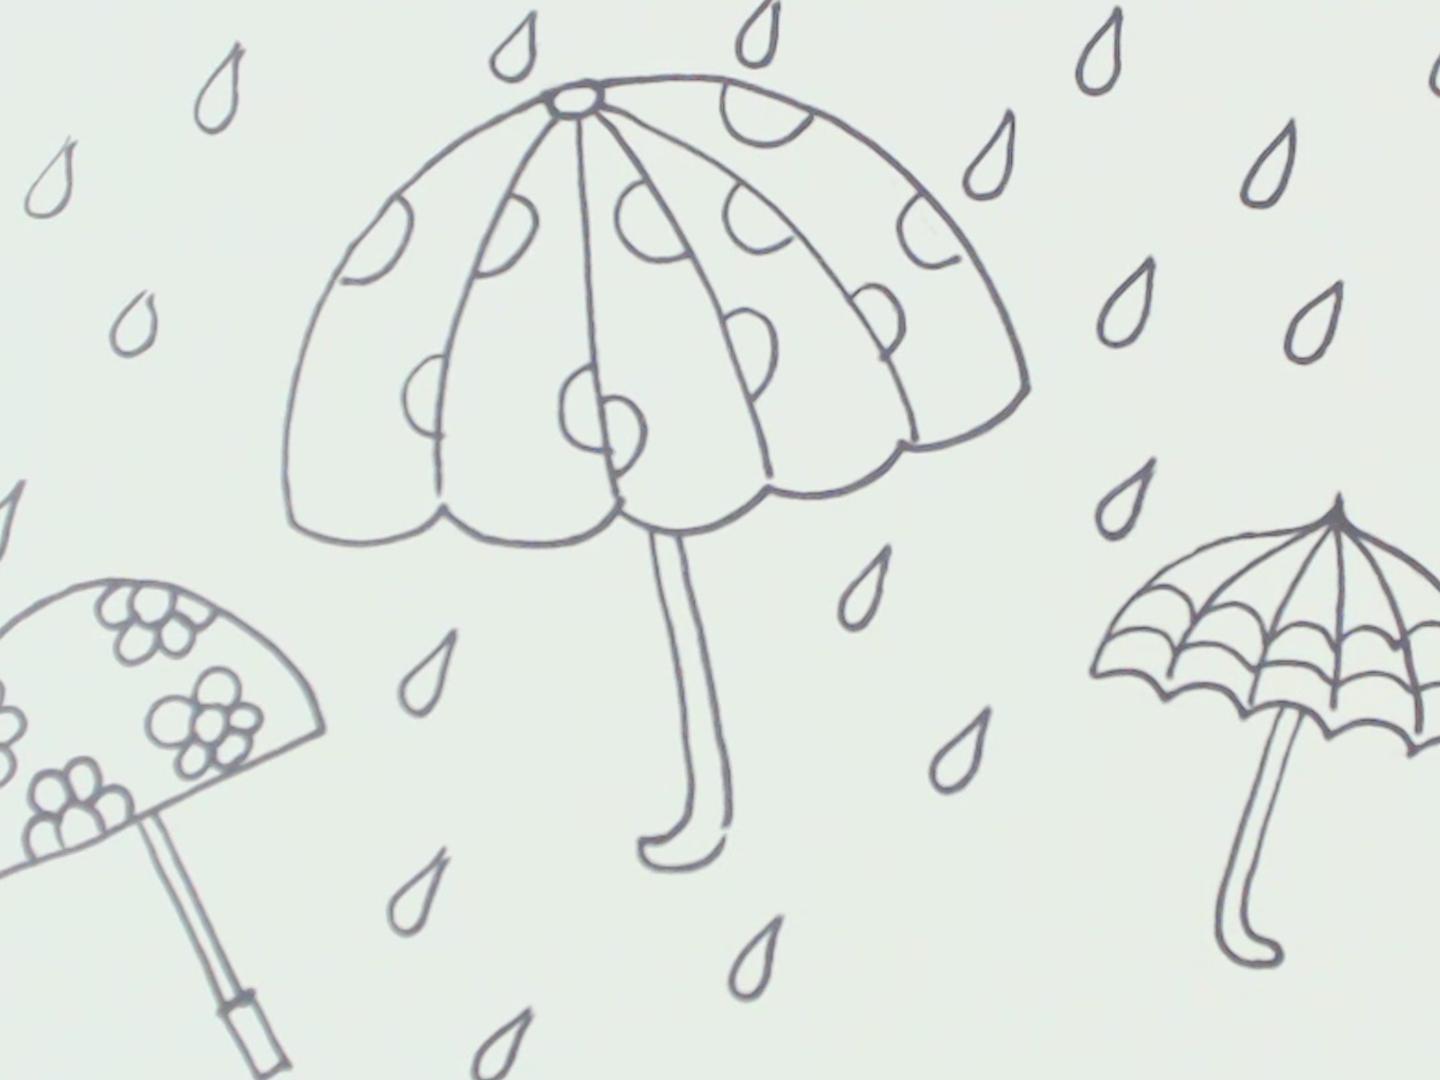 笔画教程3  03:01  来源:好看视频-画雨伞简笔画 简单易学的雨伞画画